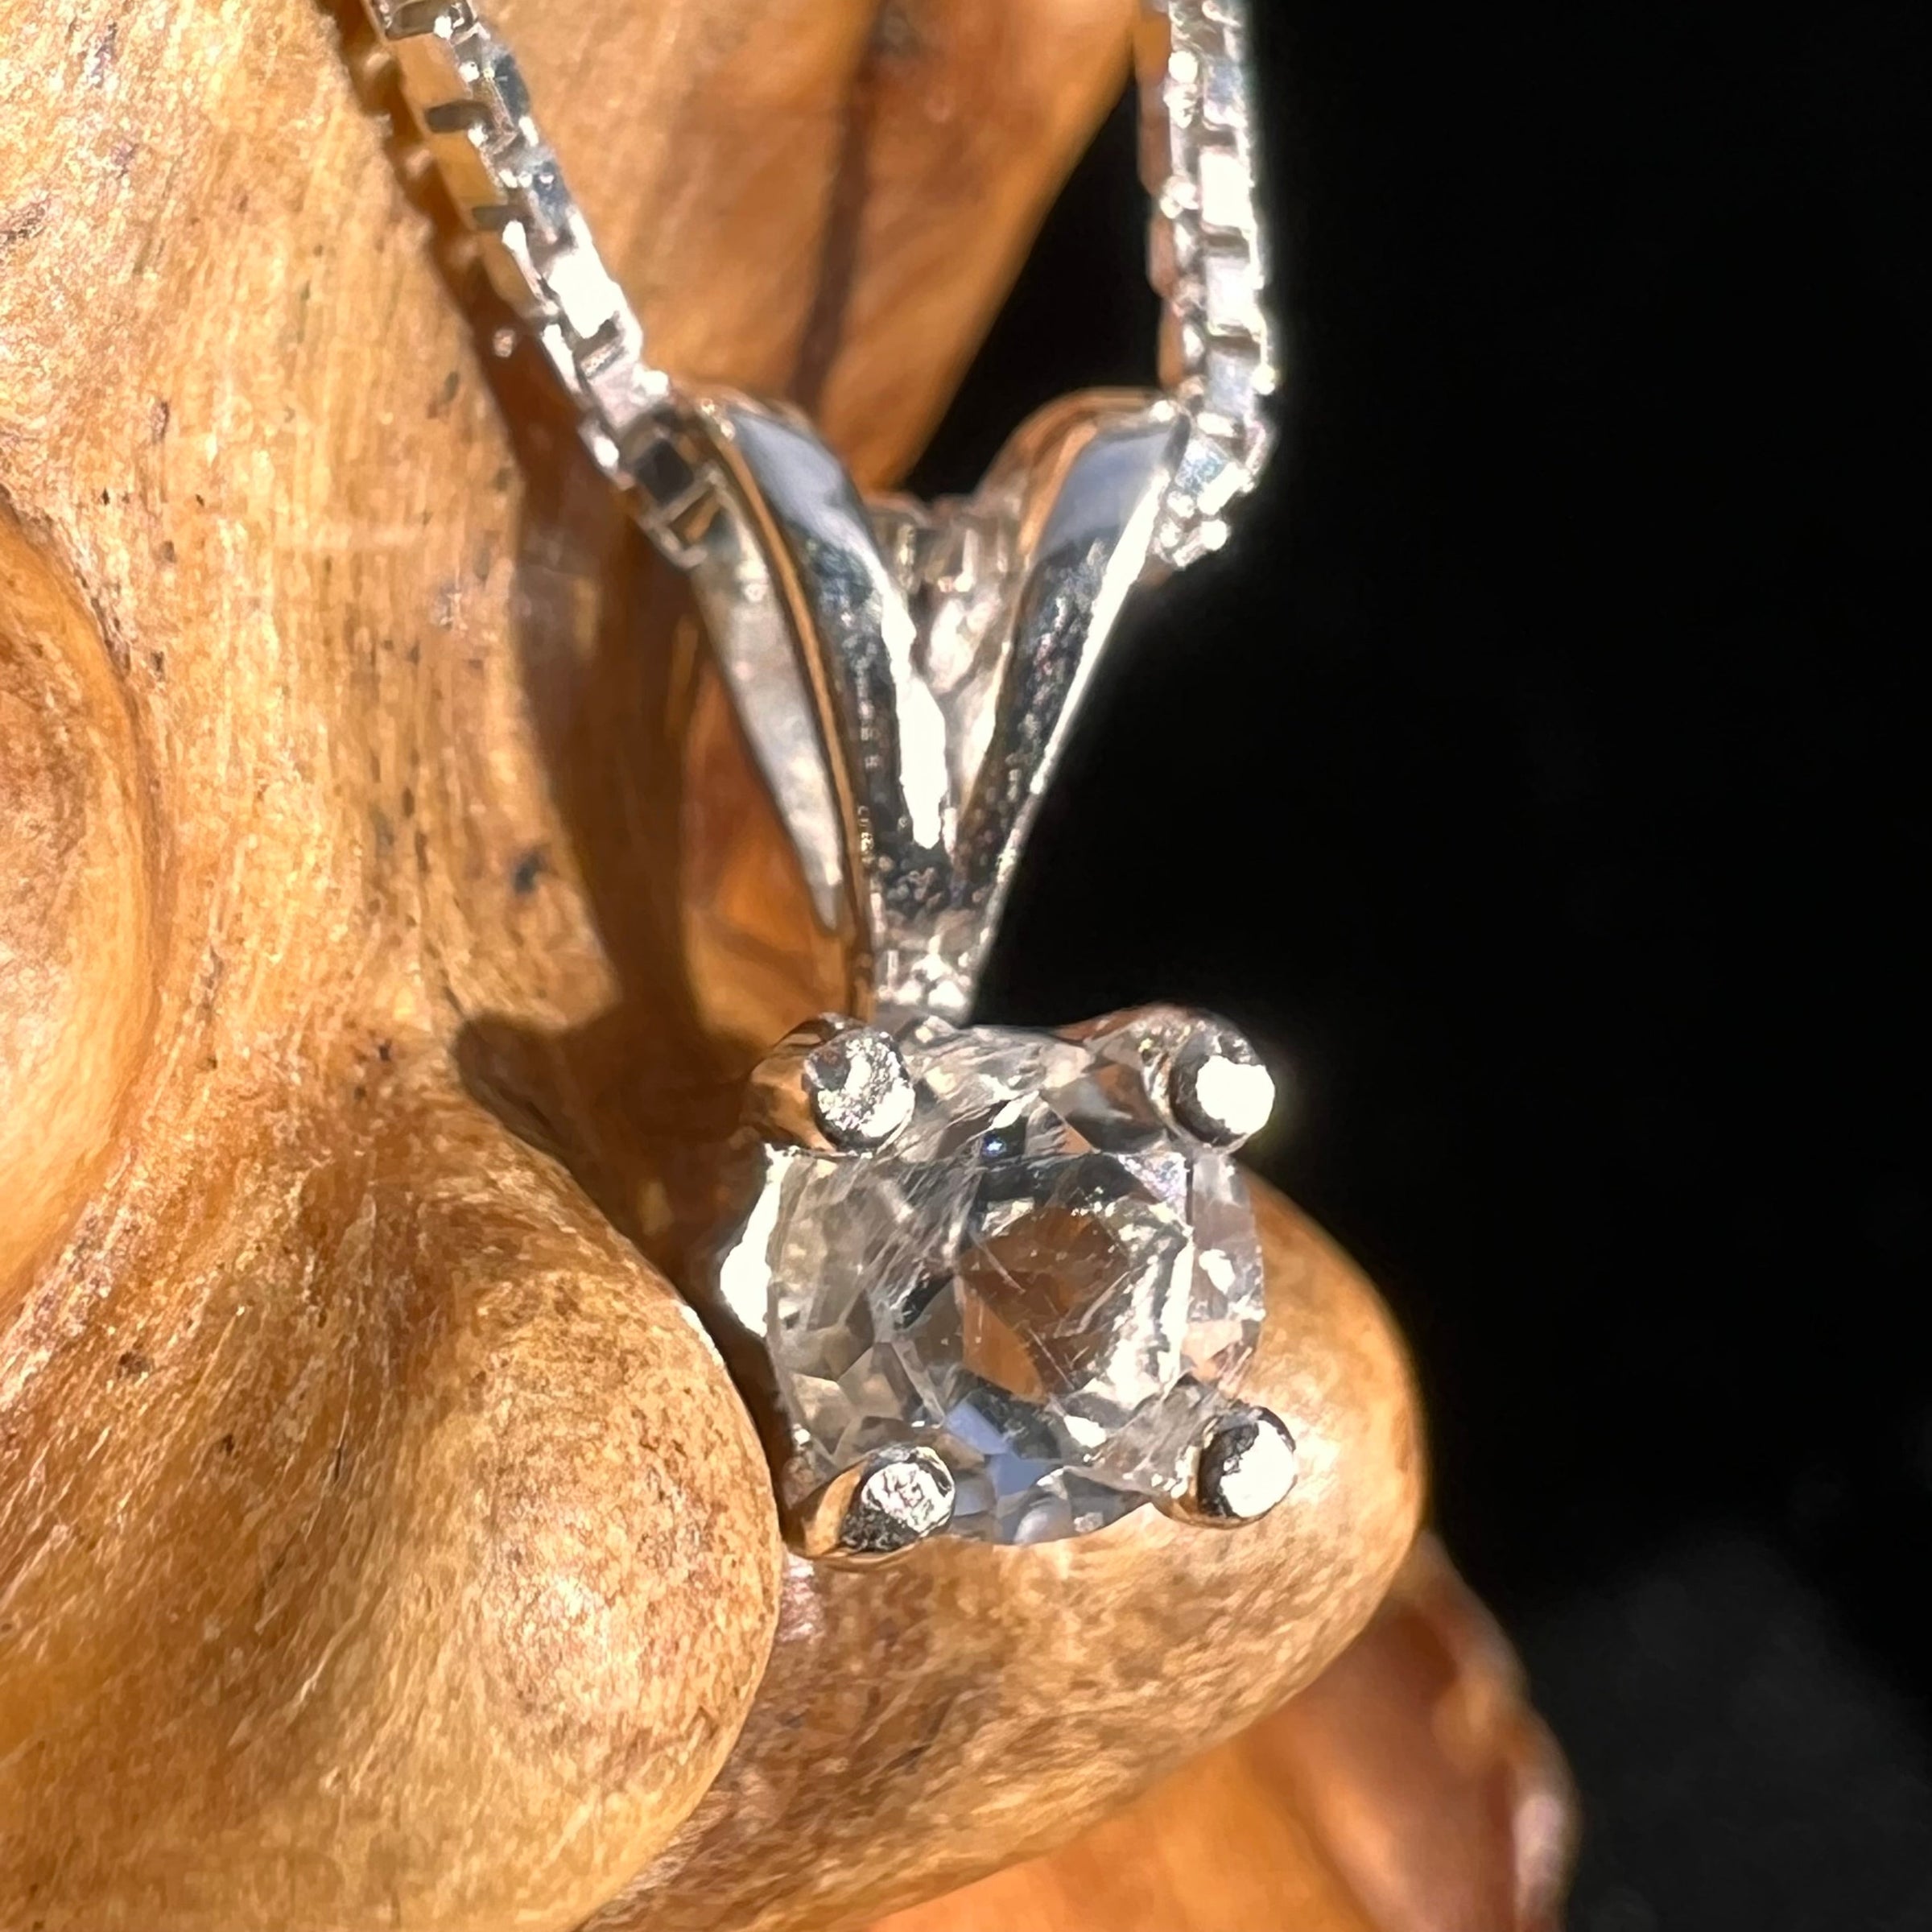 Faceted Petalite Gemstone Necklace Sterling Silver #4002-Moldavite Life